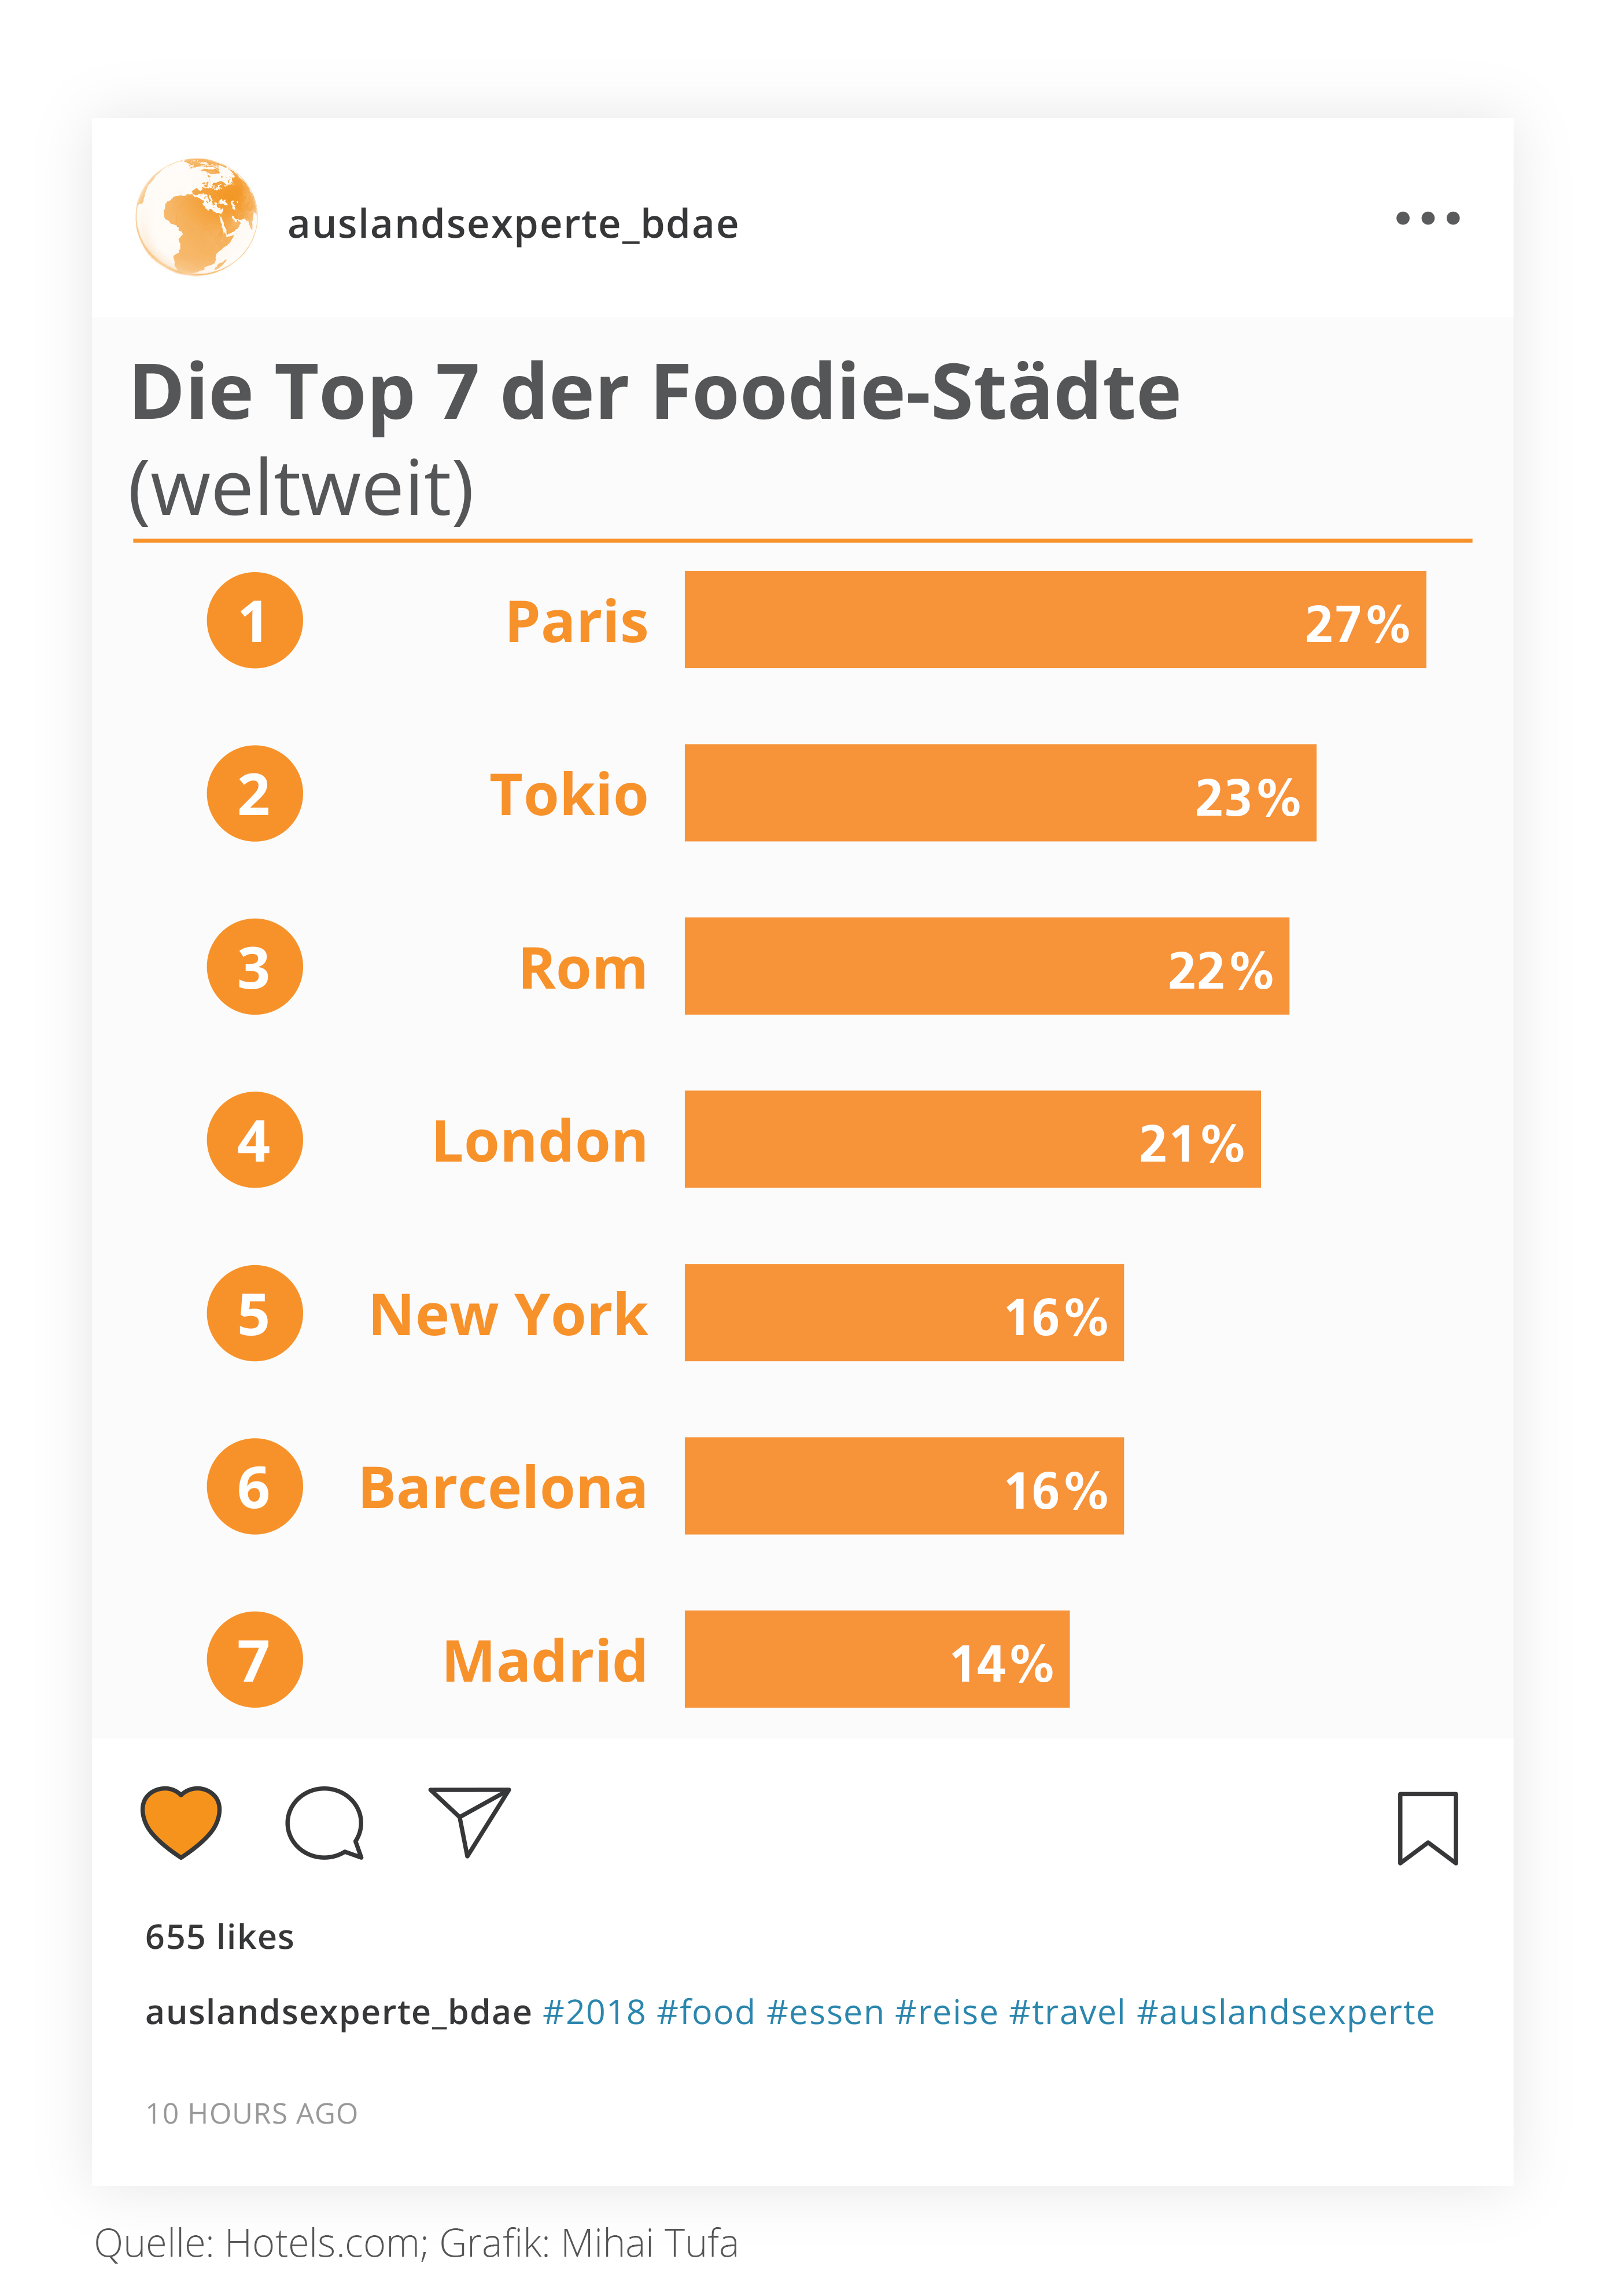 Die Top 7 der Foodie Stadte